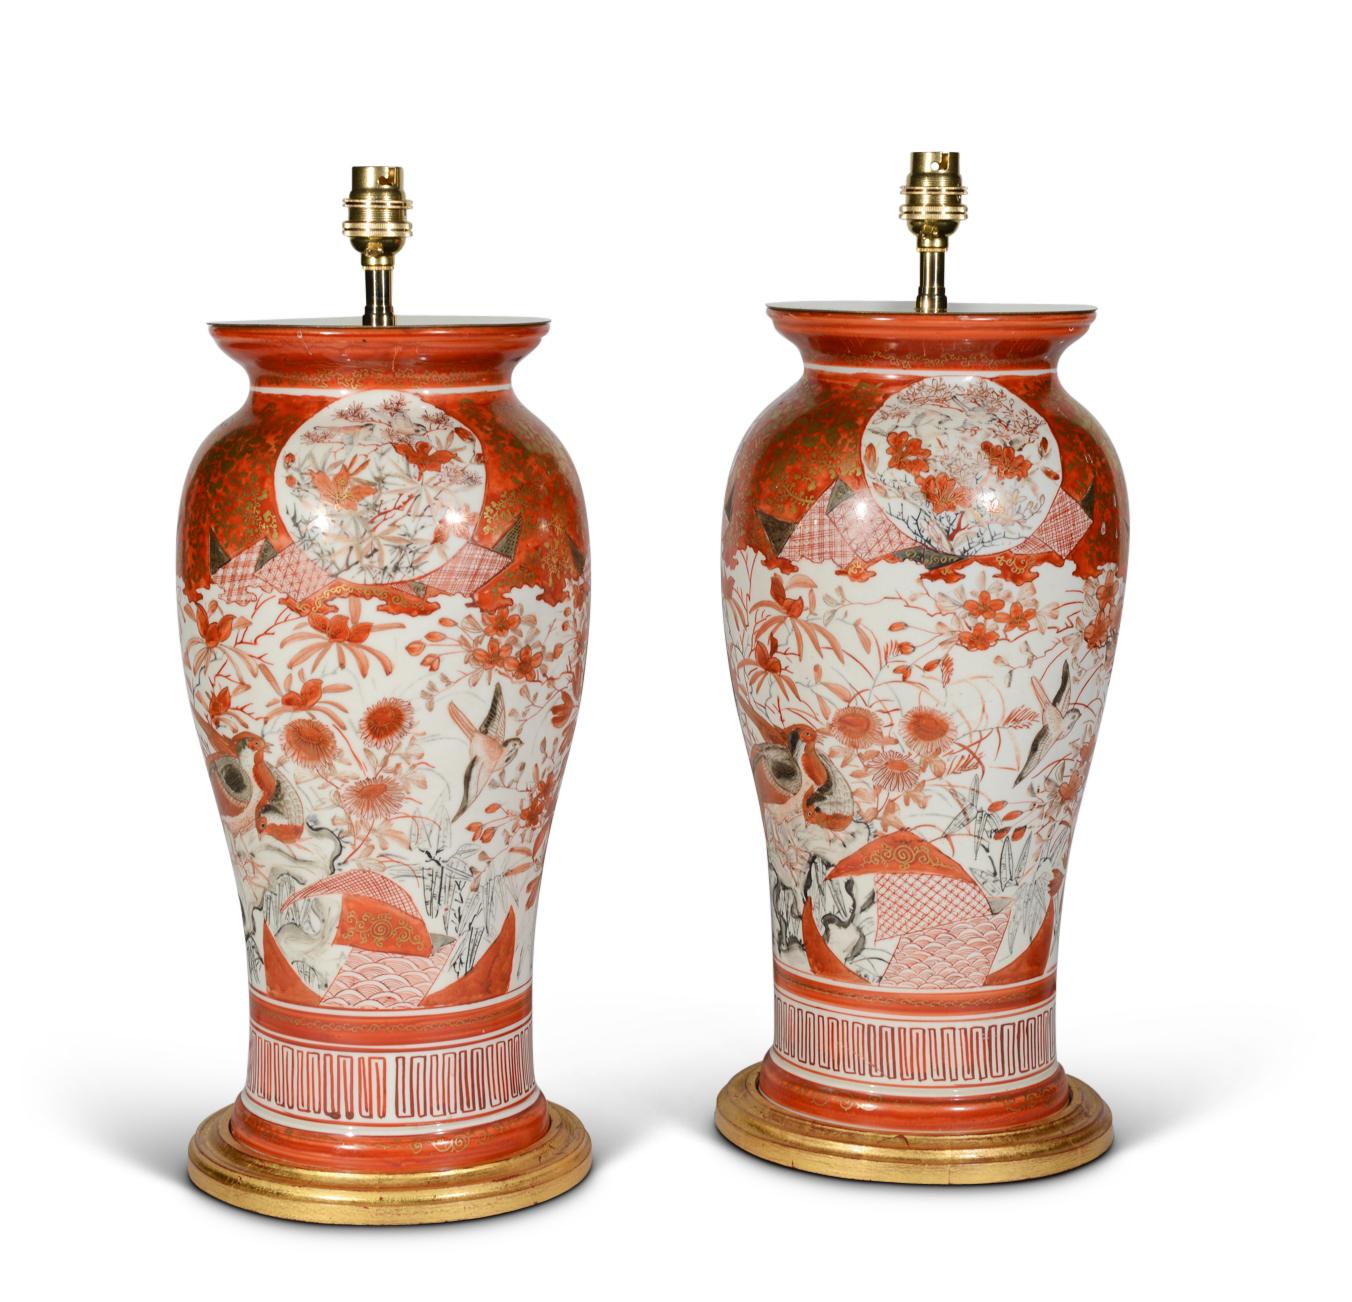 Une belle paire de vases japonais Kutani de la fin du XIXe siècle, de forme balustre, magnifiquement peints dans la palette typique d'oranges sur fond blanc avec des rehauts dorés, avec des faisans et d'autres oiseaux exotiques au milieu de